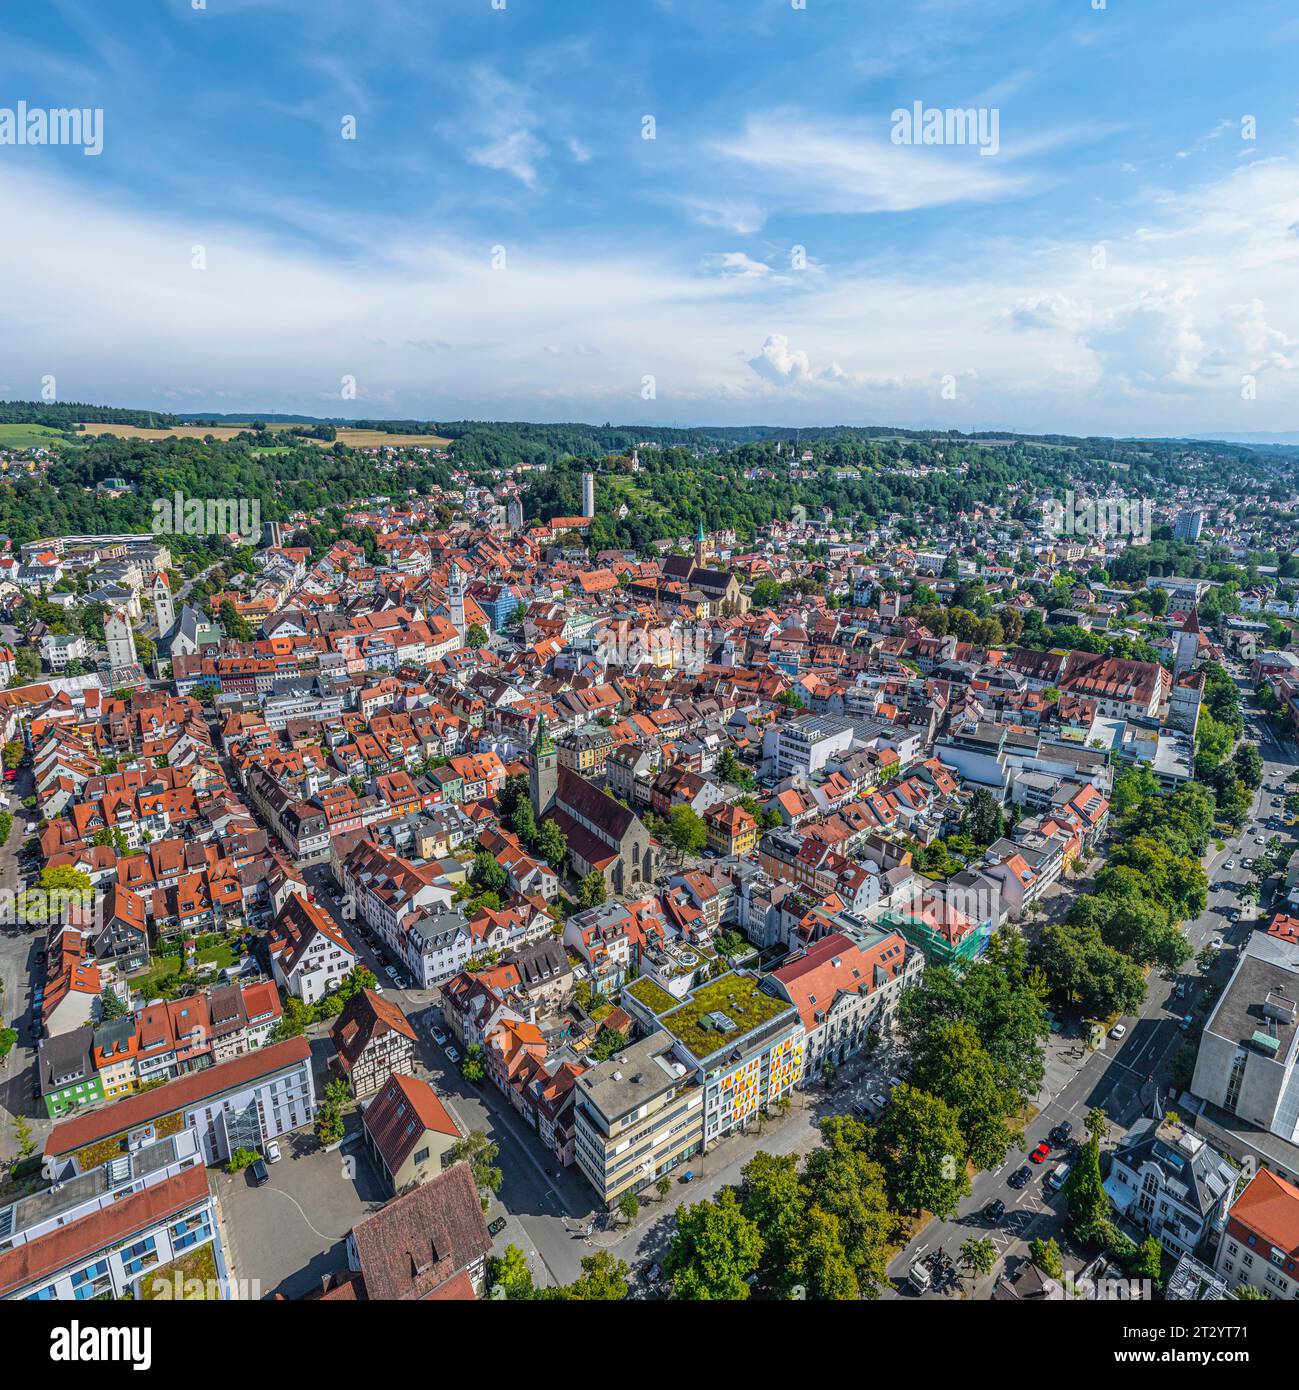 Vue aérienne de la ville de Ravensburg, une belle ville de district dans le sud de l'allemagne Banque D'Images